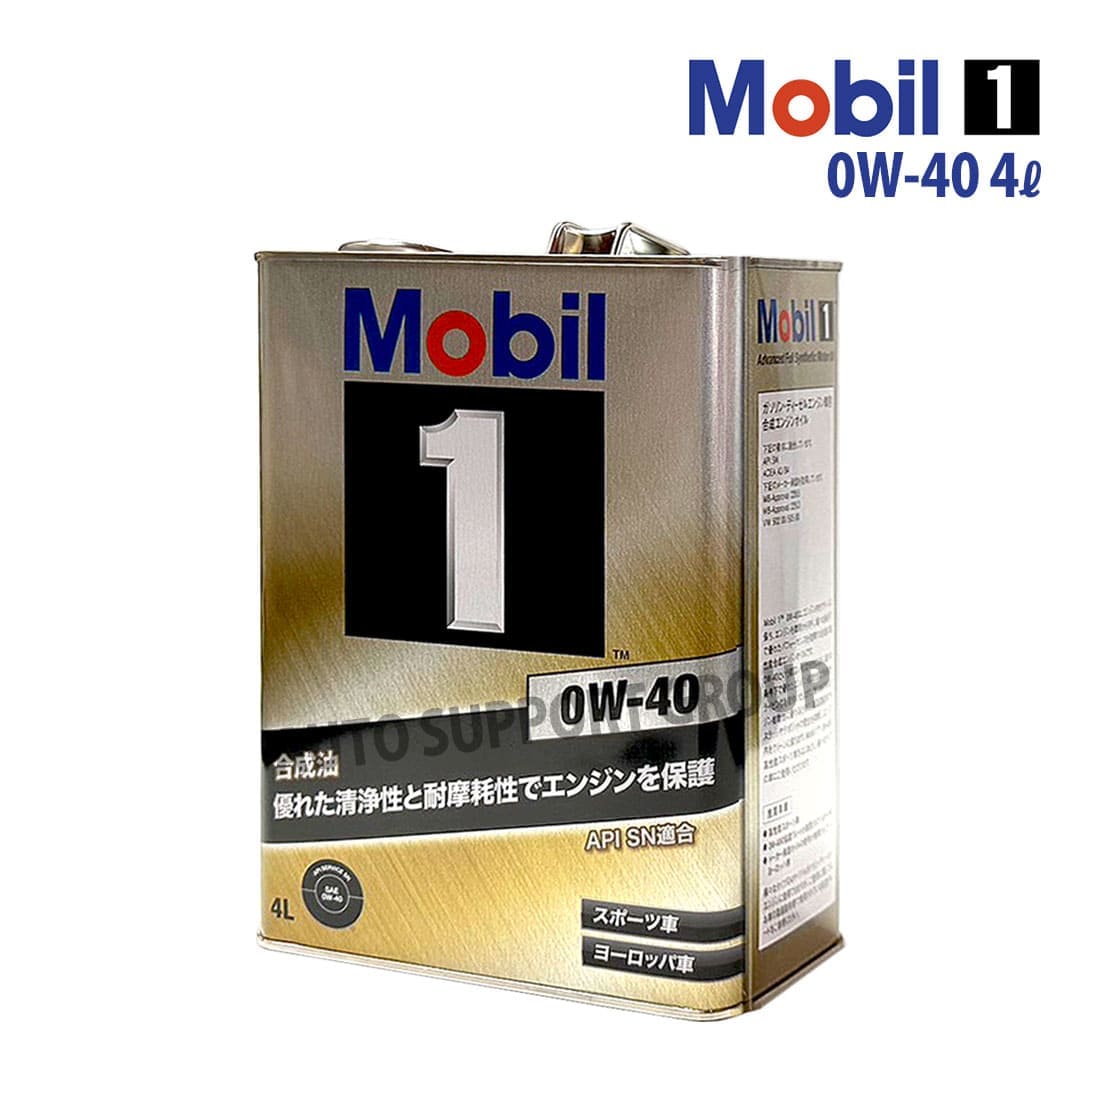 エンジンオイル 0W-40 SP モービル1 Mobil1 4L缶 (4リットル) : ys 